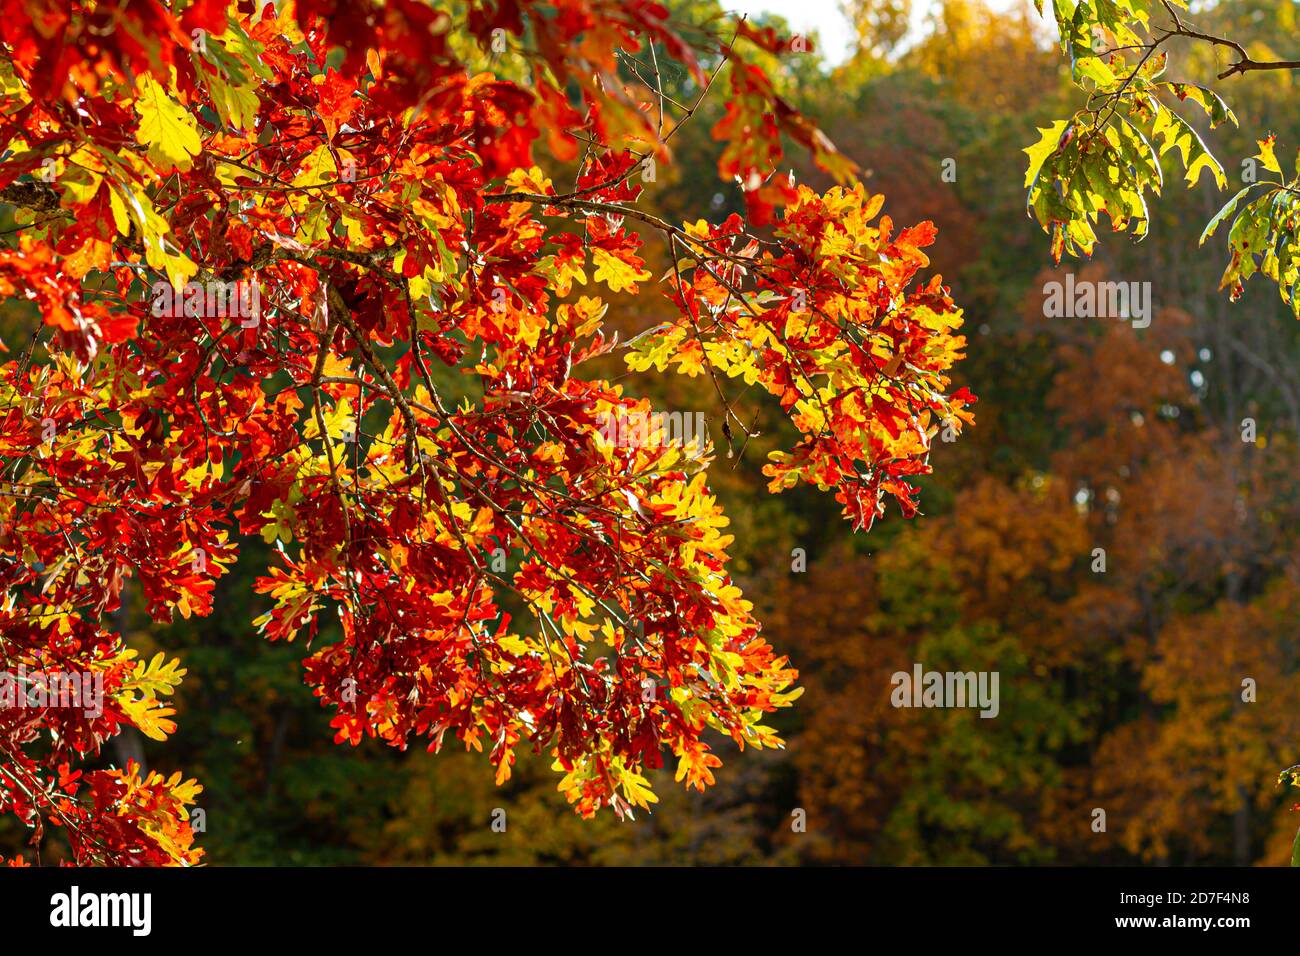 Un concept d'automne avec l'image d'une branche d'érable avec des feuilles de couleur vive. En arrière-plan, il y a une forêt avec des arbres rouges et orange verts Banque D'Images